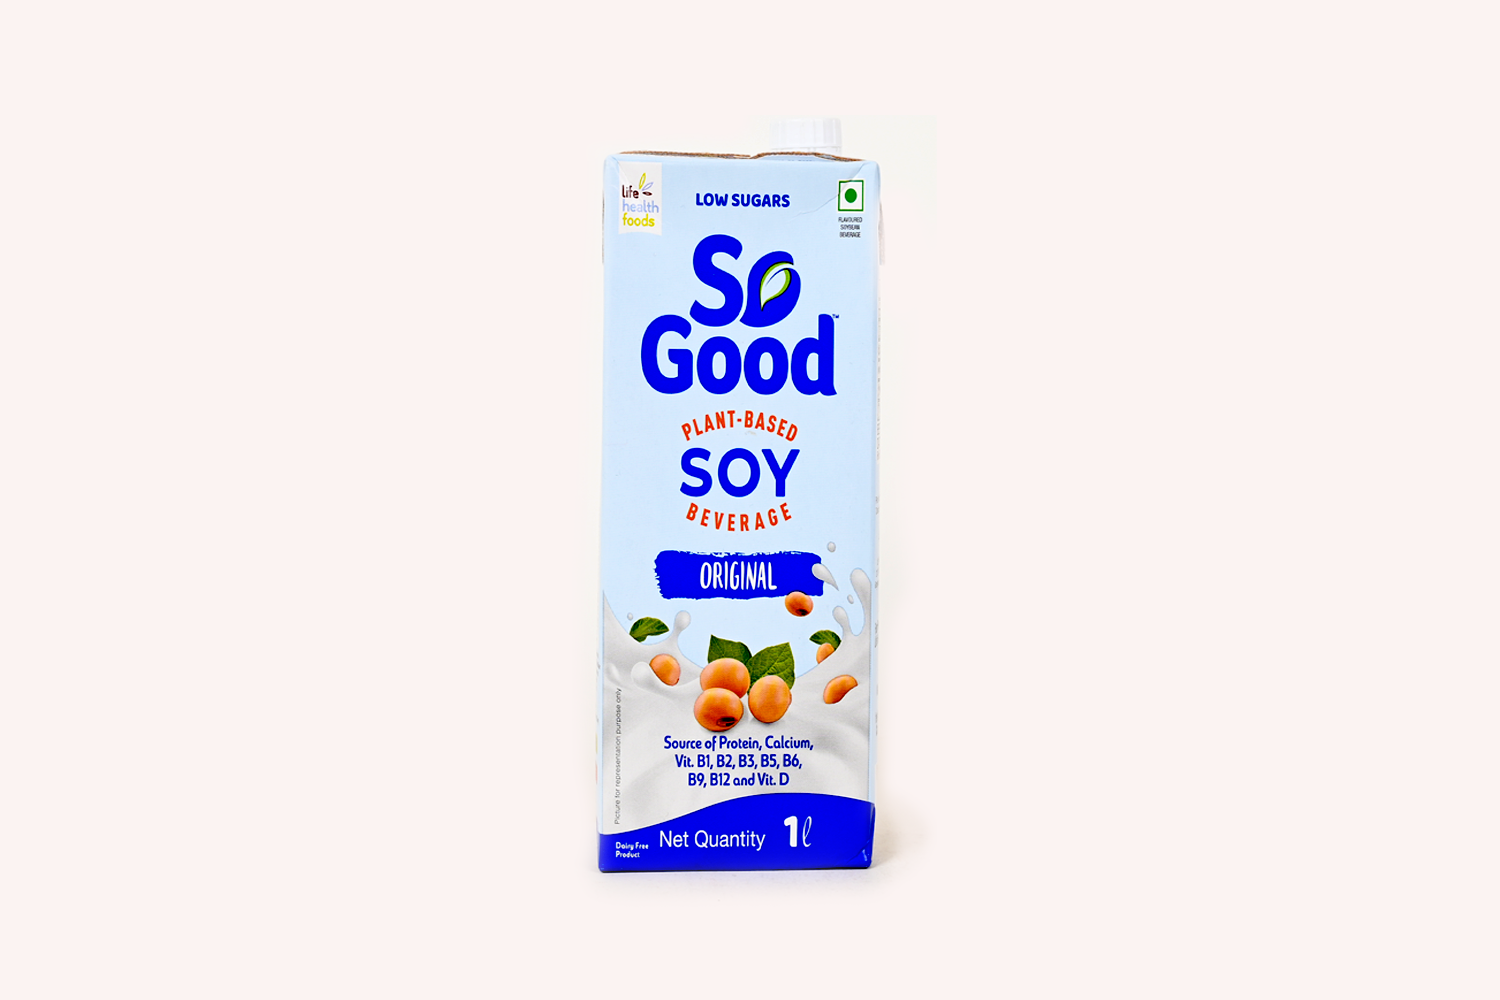 So Good Plant-Based Original Soy Beverage